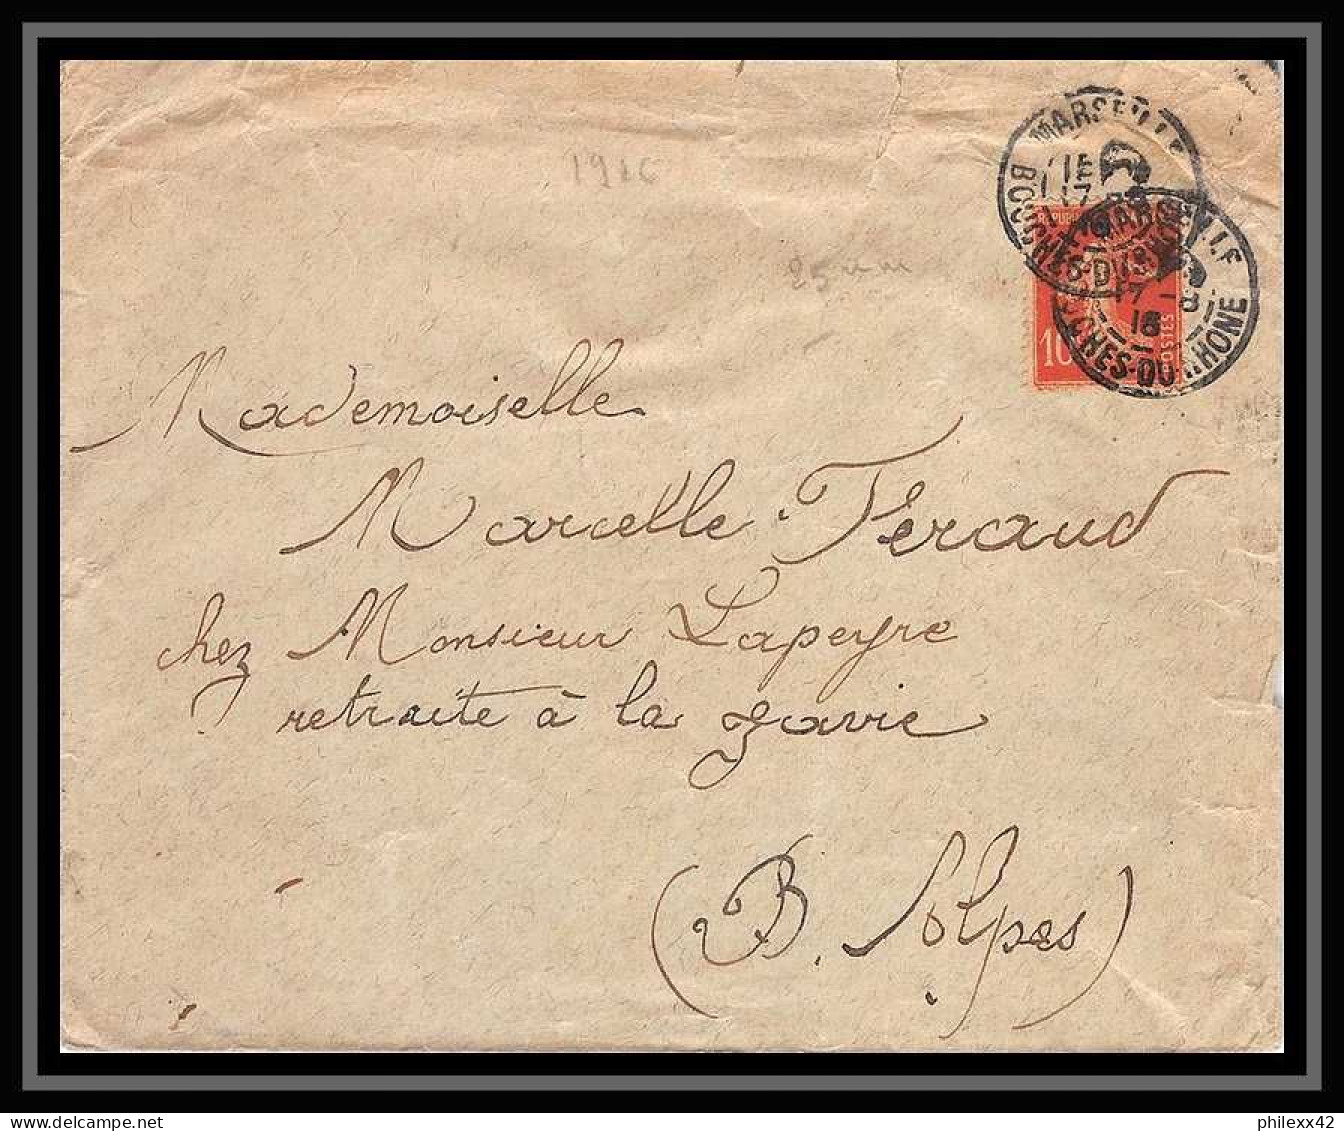 115306 lot de 13 Lettres cover Carte postale (postcard) avis de reception Bouches du rhone Marseille A4